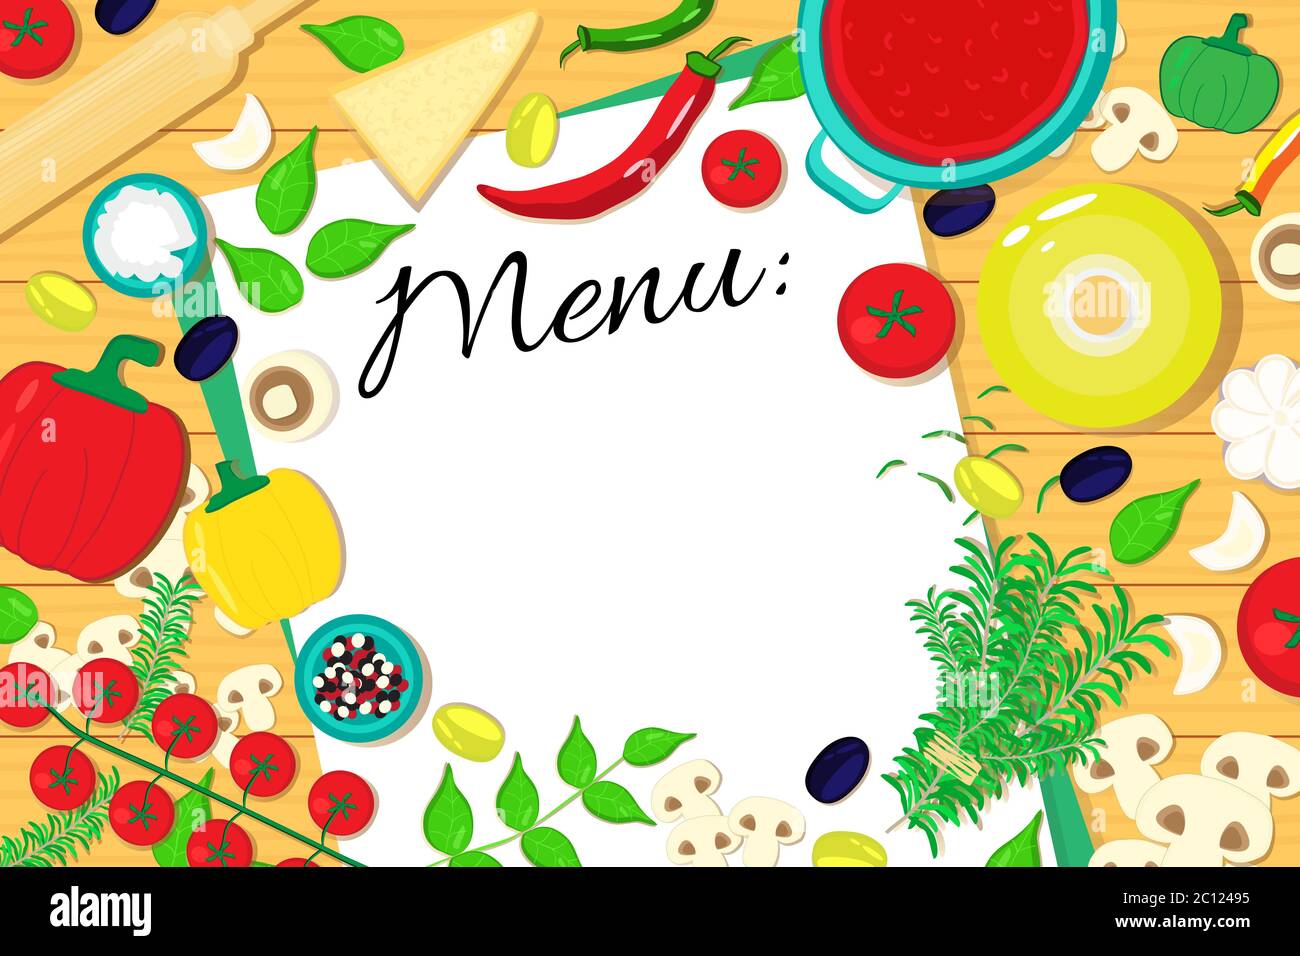 Lista de menús en la mesa con ingredientes de alimentos. Fondo de ilustración vectorial. Ilustración del Vector